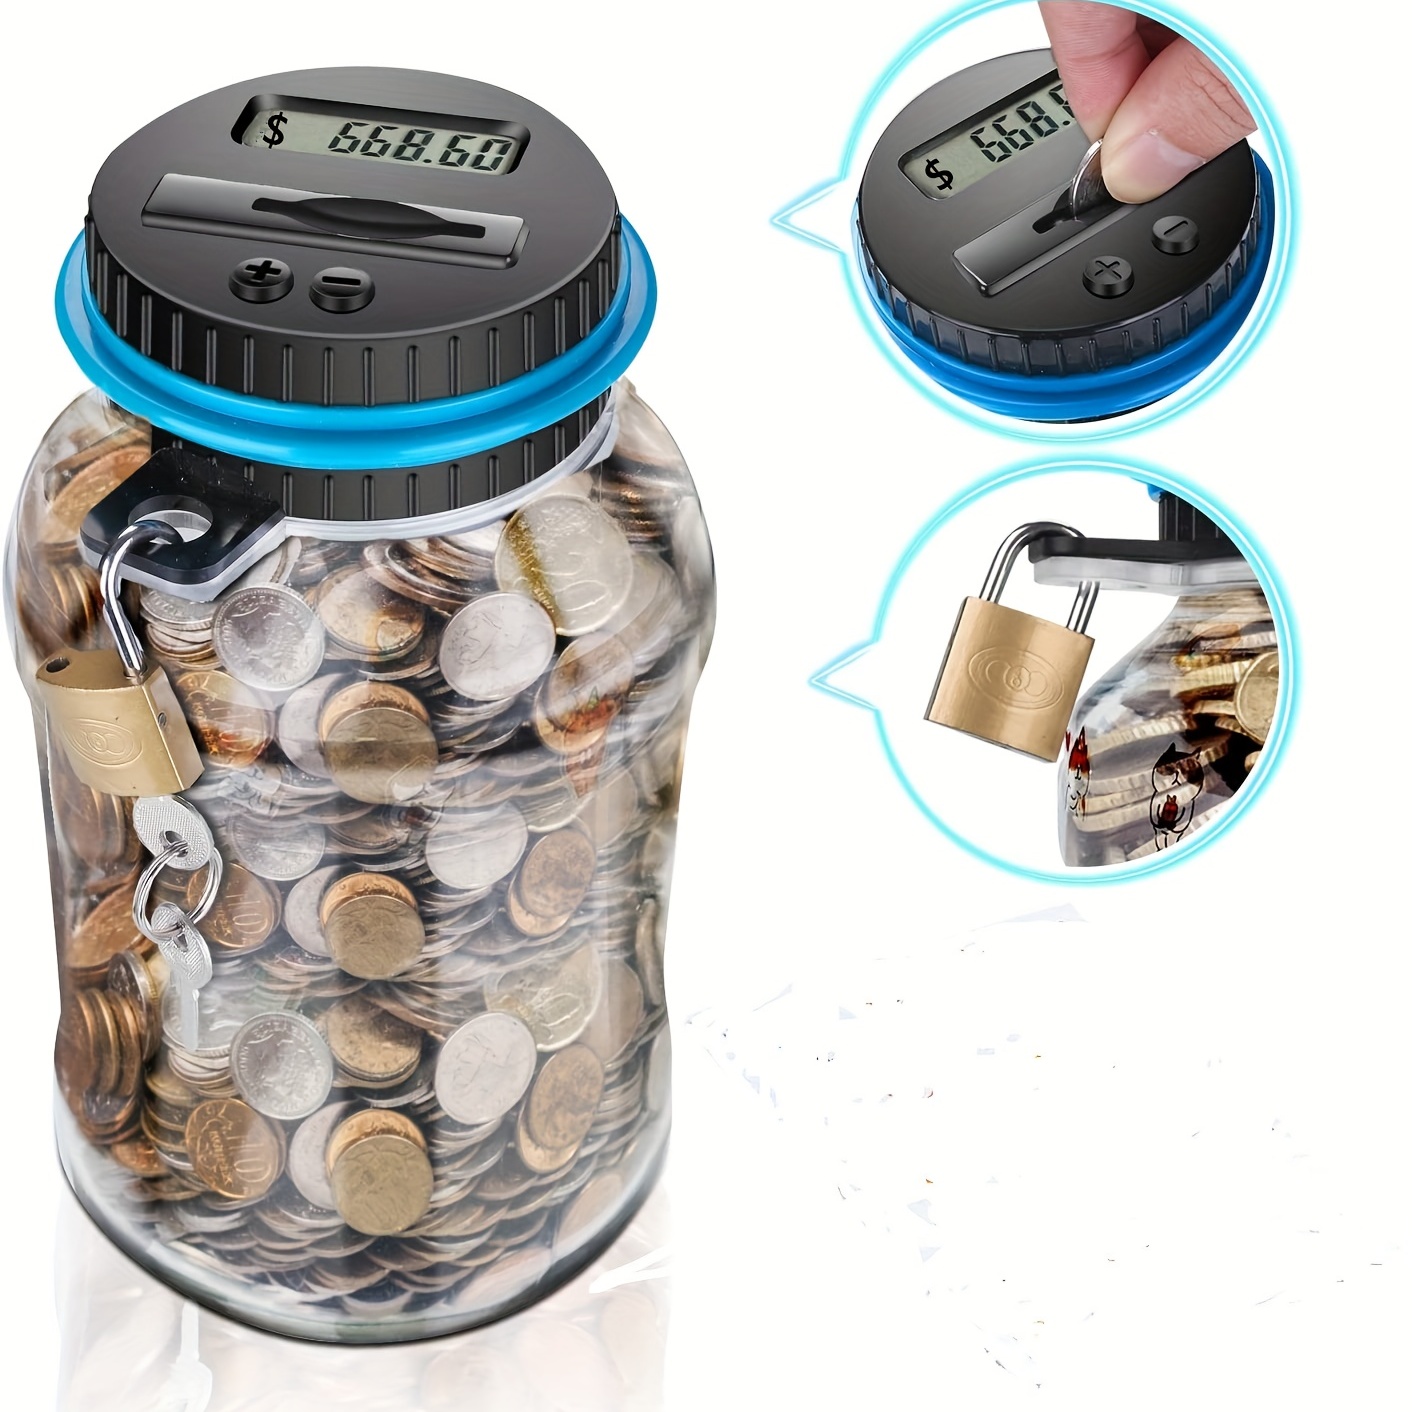 Grand Numérique Numérique Comptant Économiser De L'argent Boîte Jar Banque  LCD Affichage Pièces Économies Cadeau pour (Euro)